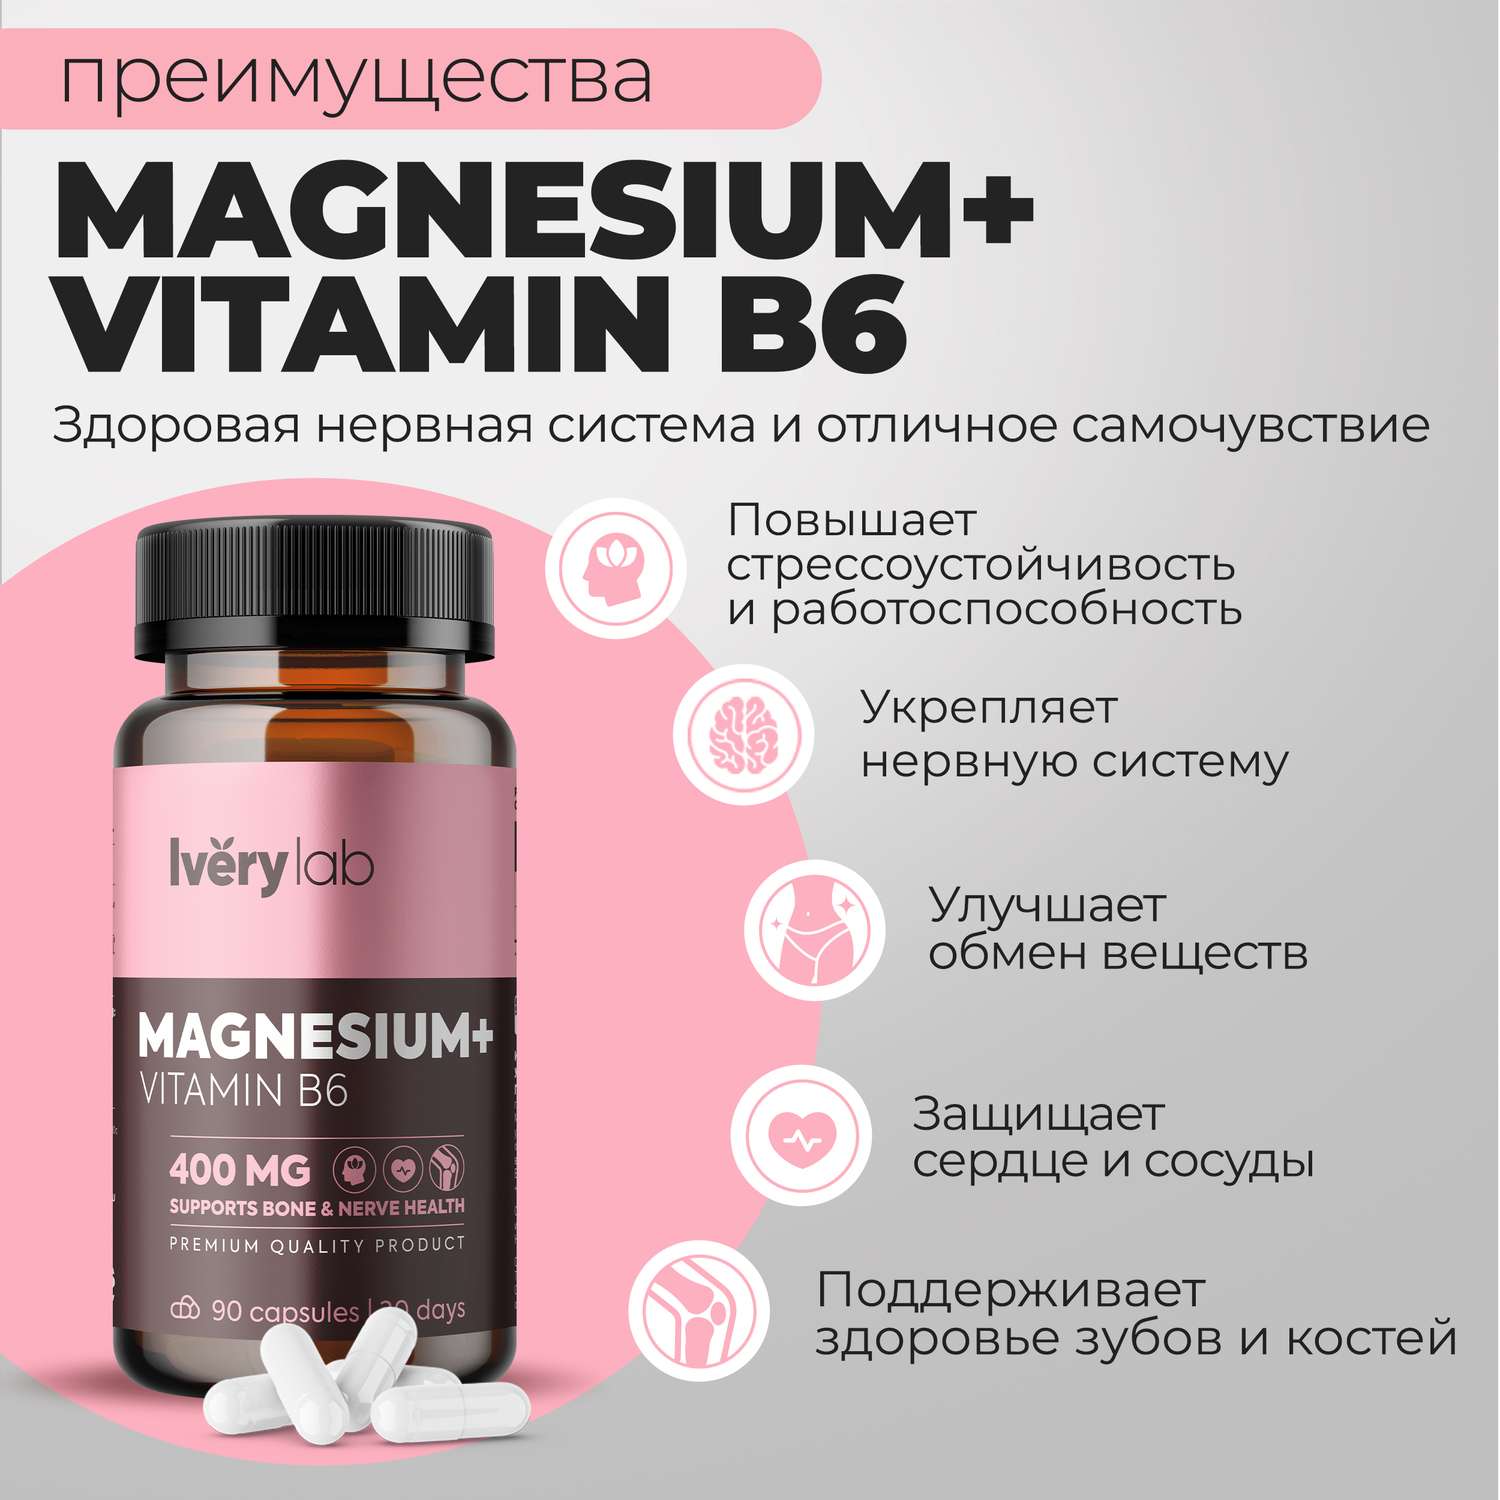 БАД Iverylab Комплекс магния и витамина B6 для памяти и нервной системы Magnesium + Vitamin B6 - фото 2